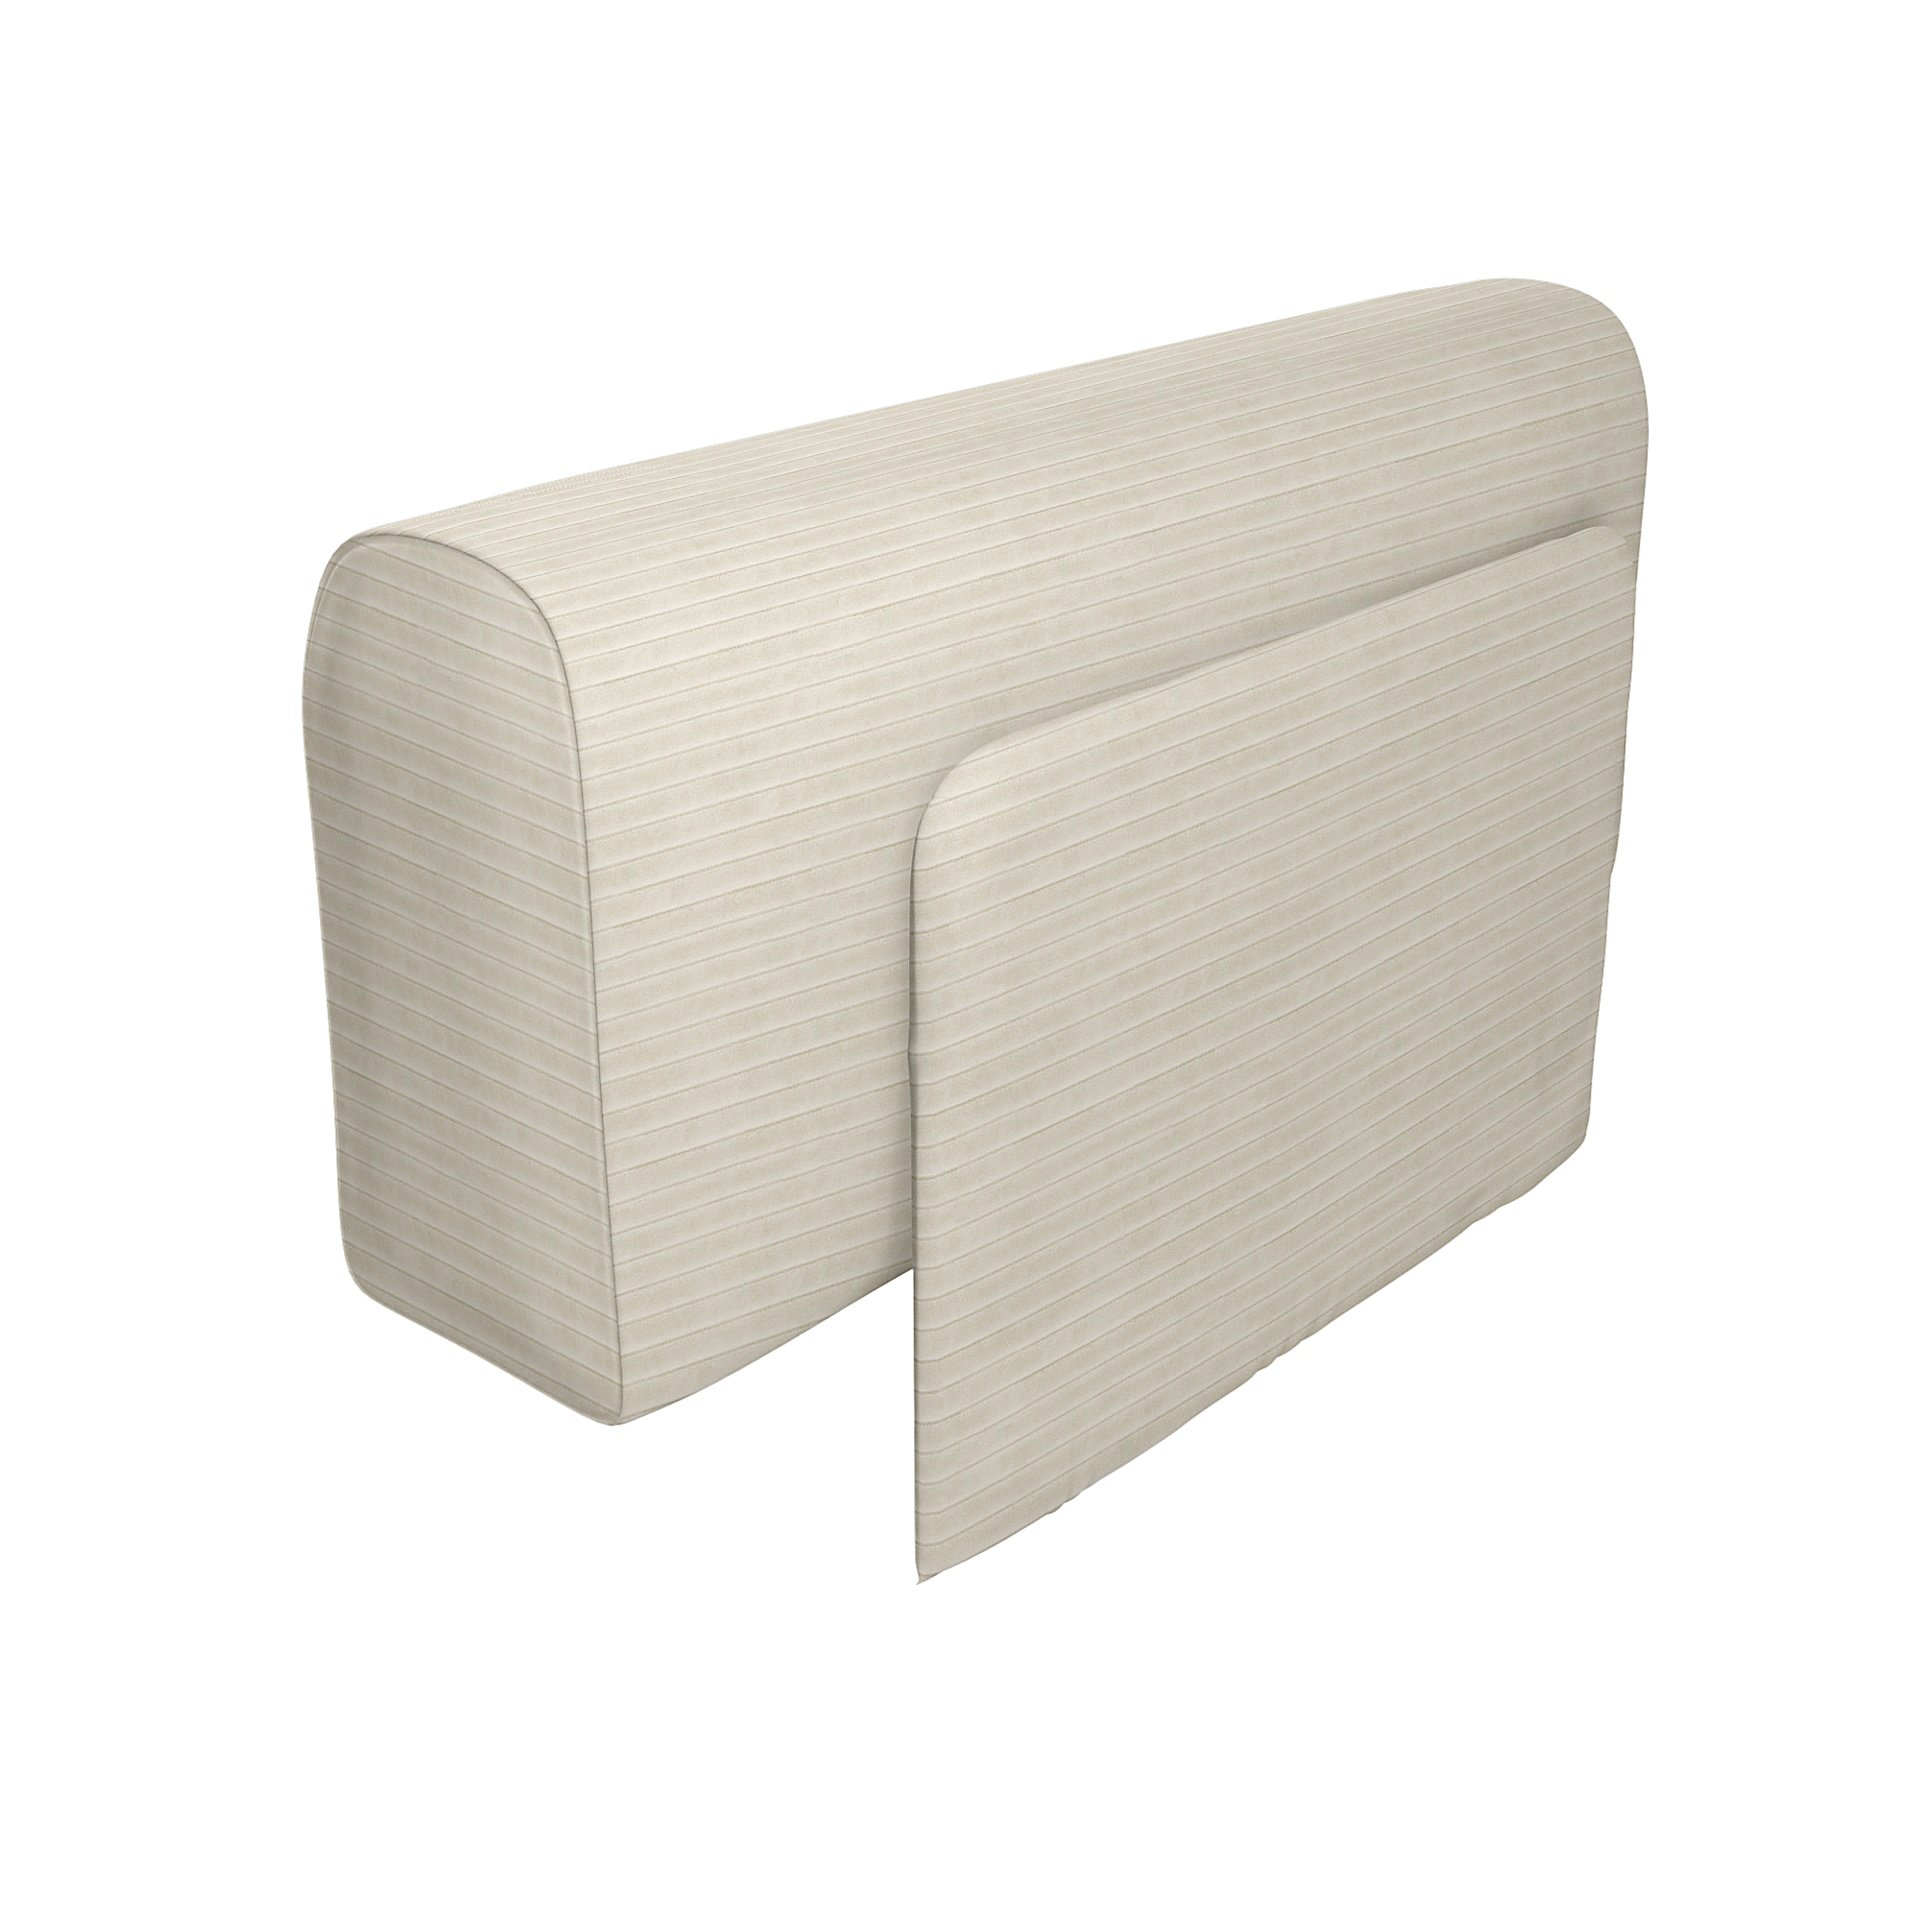 IKEA - Delaktig Armrest with Cushion Cover, Tofu, Corduroy - Bemz